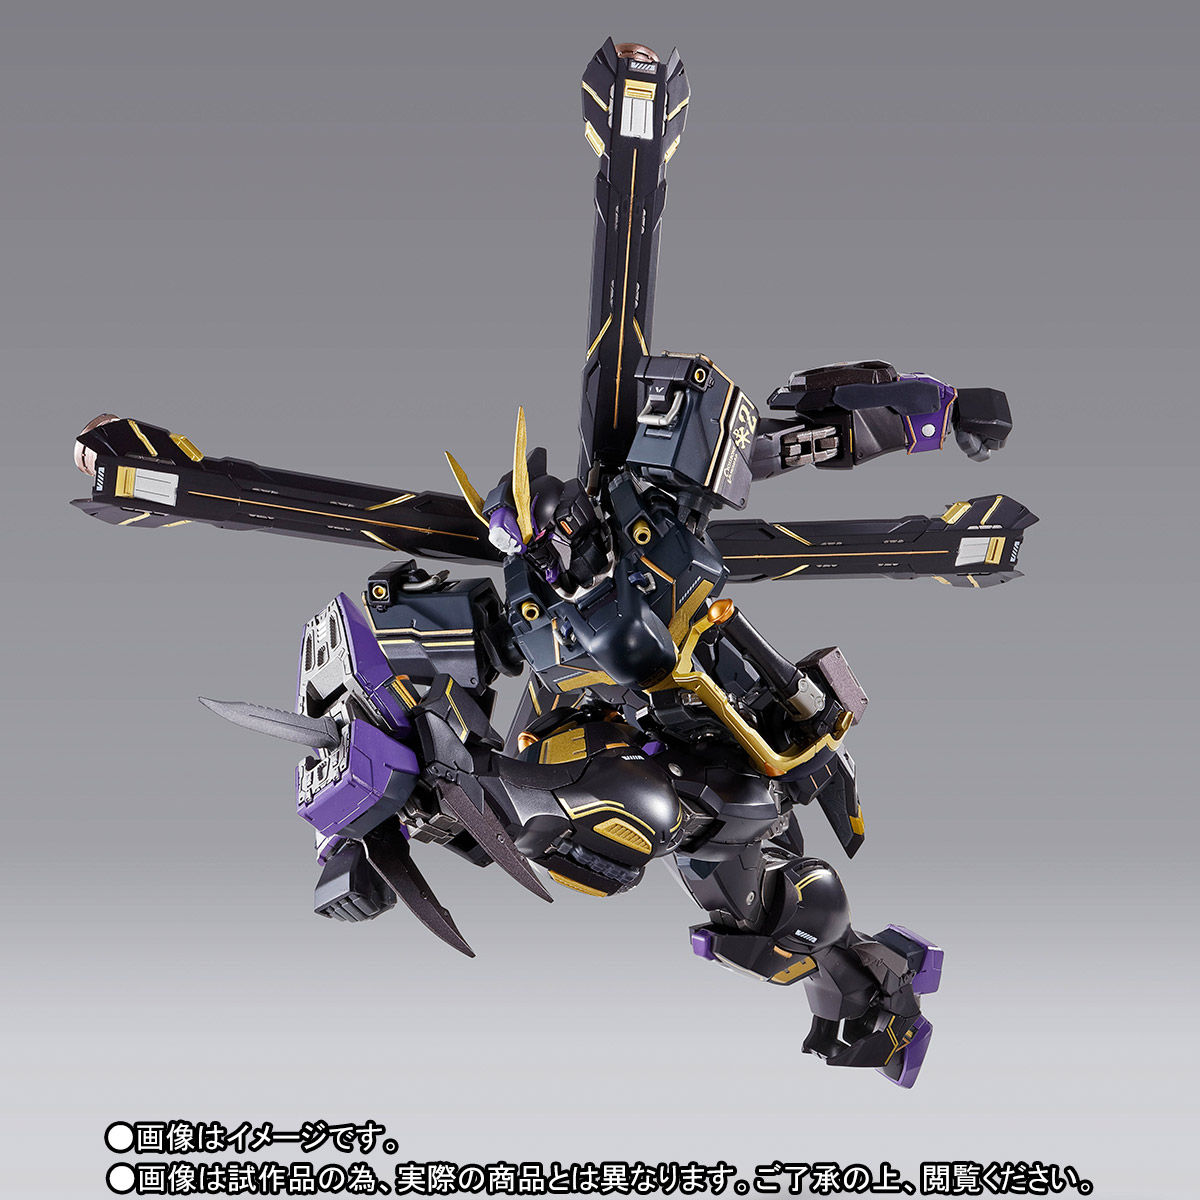 【限定販売】METAL BUILD『クロスボーン・ガンダムX2』機動戦士クロスボーン・ガンダム 可動フィギュア-004